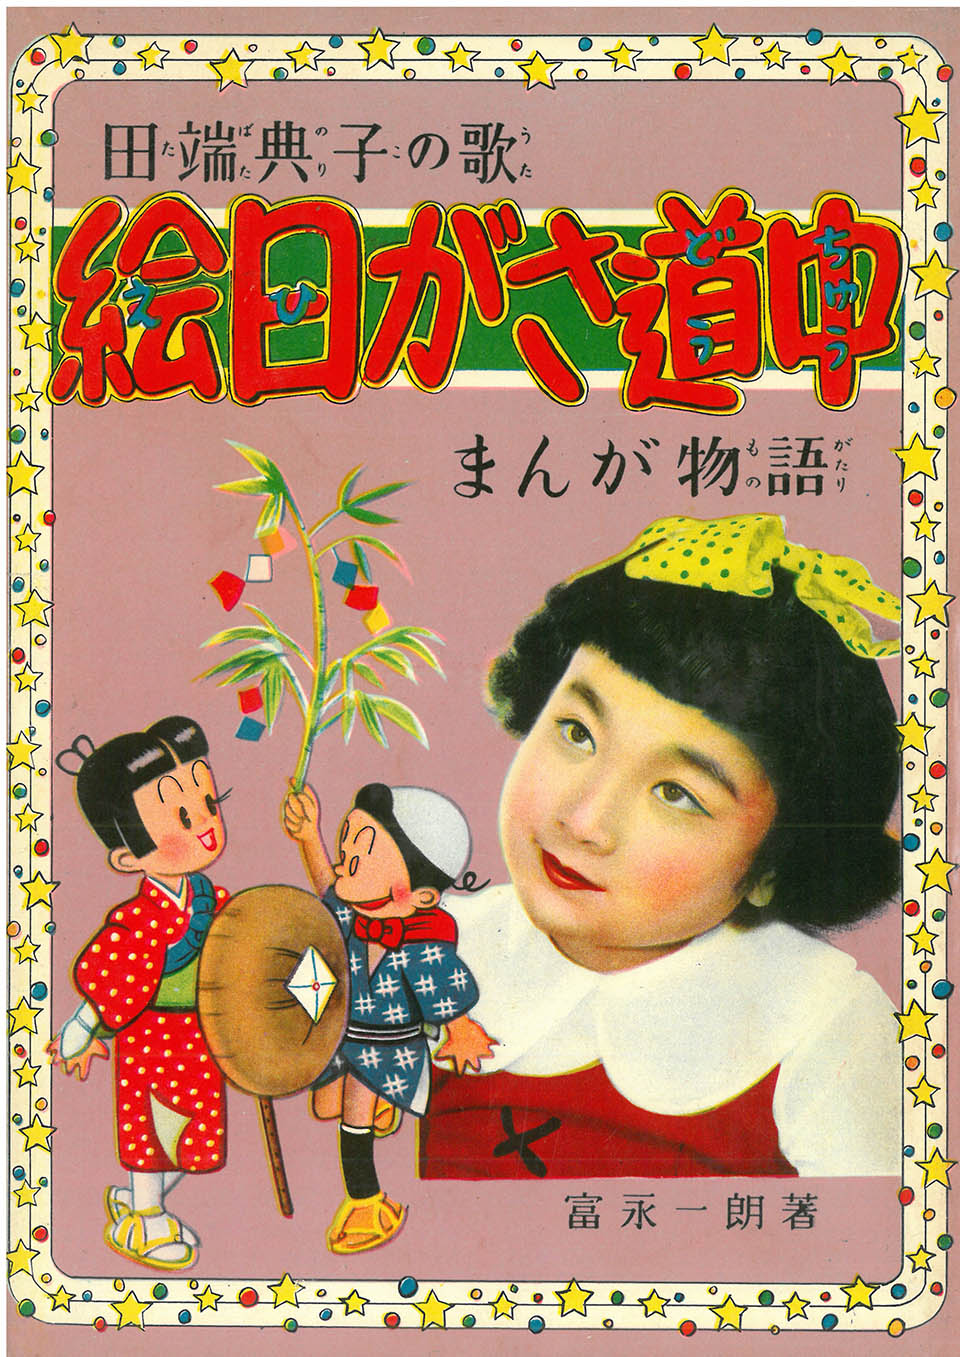 富永一郎『田端典子の歌 絵日がさ道中』1954年2月28日